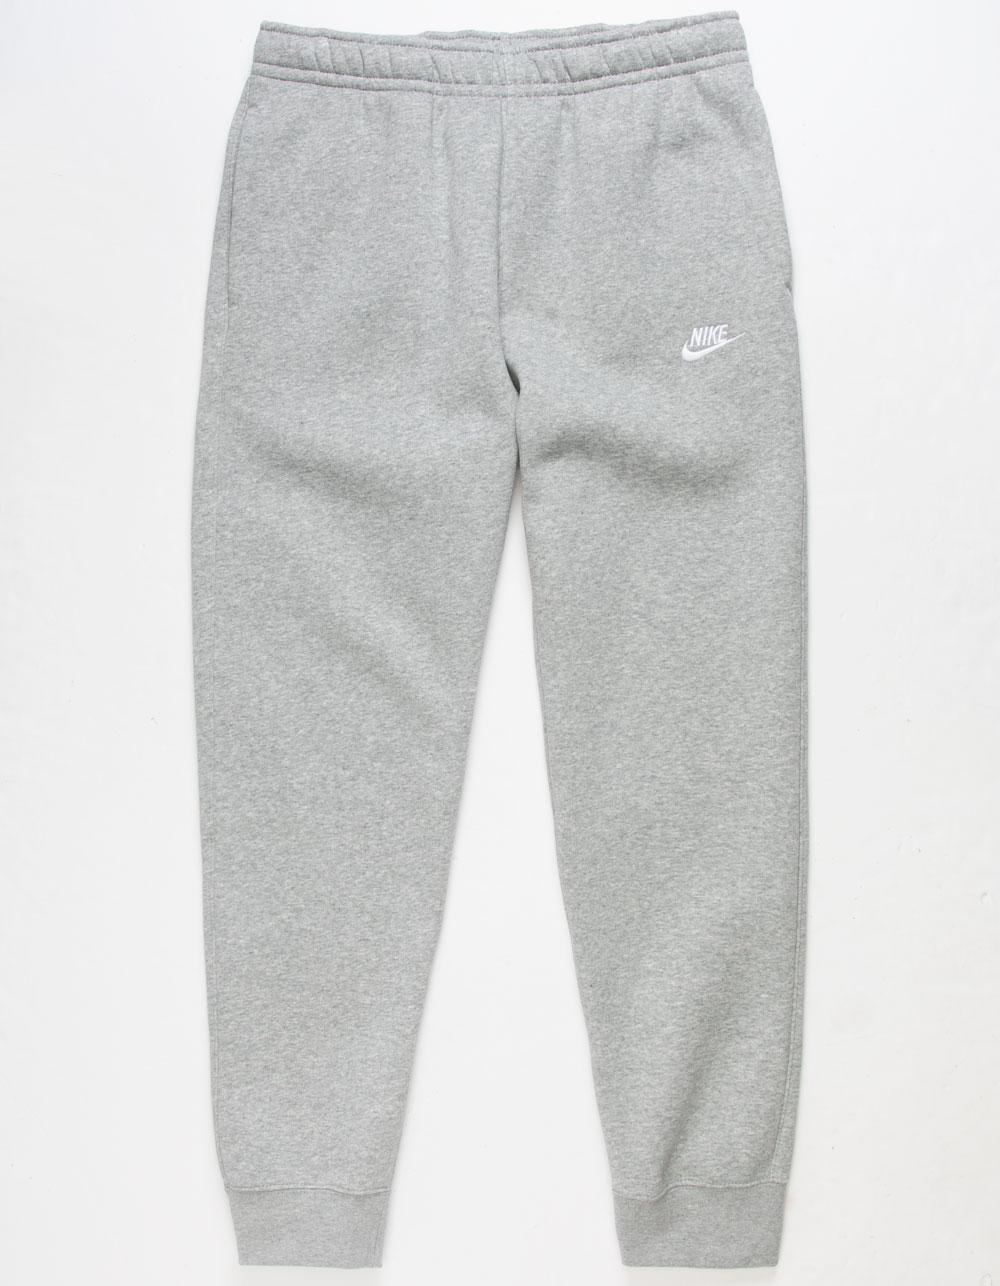 Nike Sportswear Club Fleece Sweatpants, Nordstrom